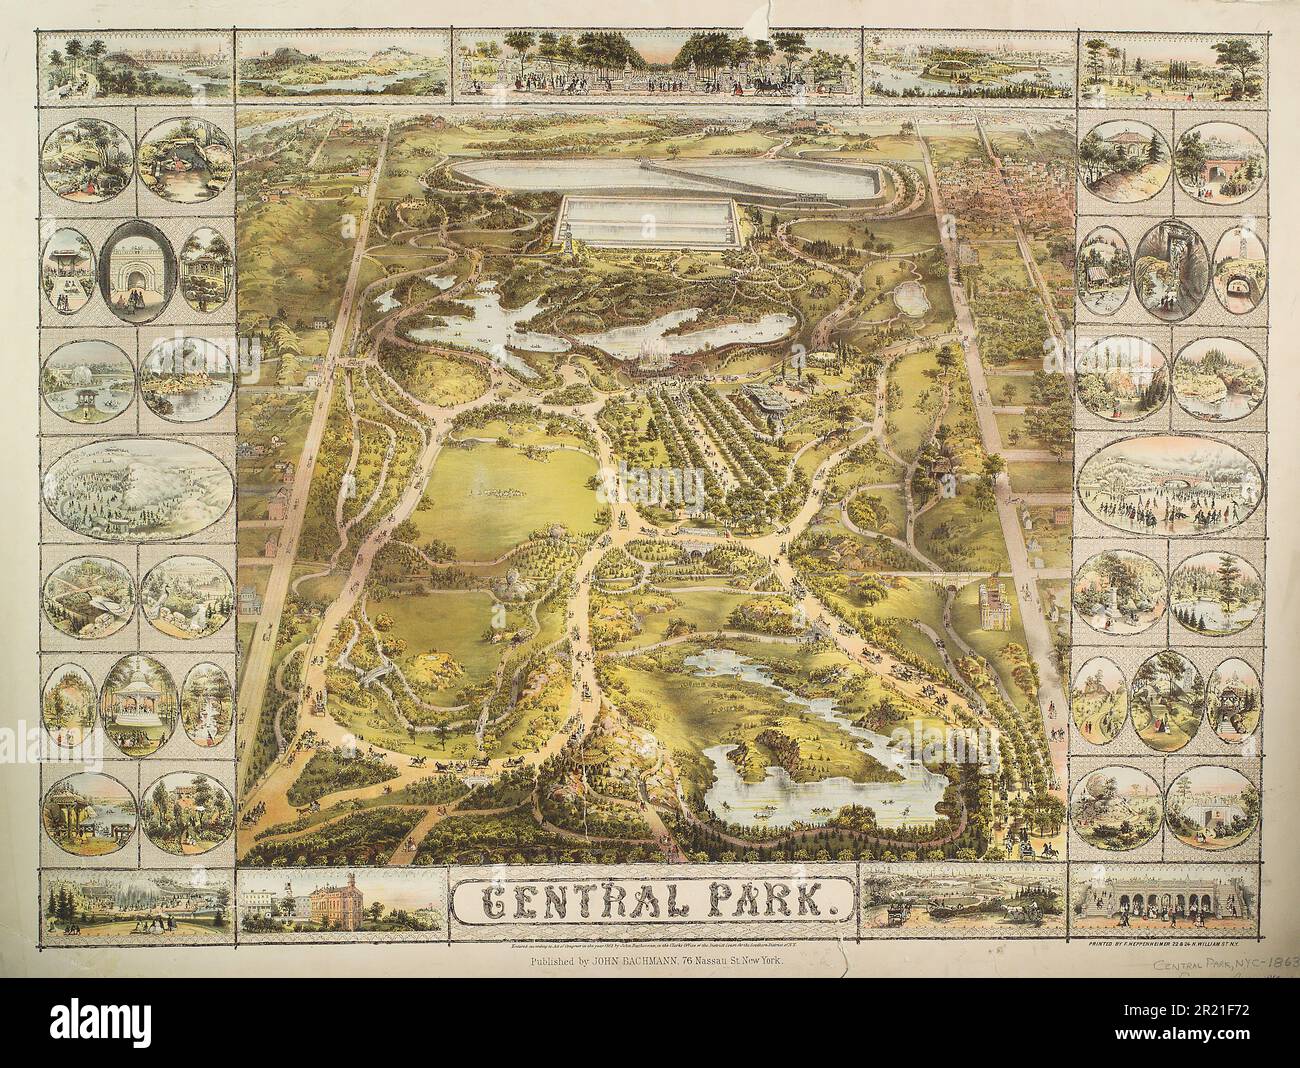 Vintage 19. Century illustrierte Karte des Central Park ca. 1863 in New York City, USA. Veröffentlicht von John Bachmann. Stockfoto